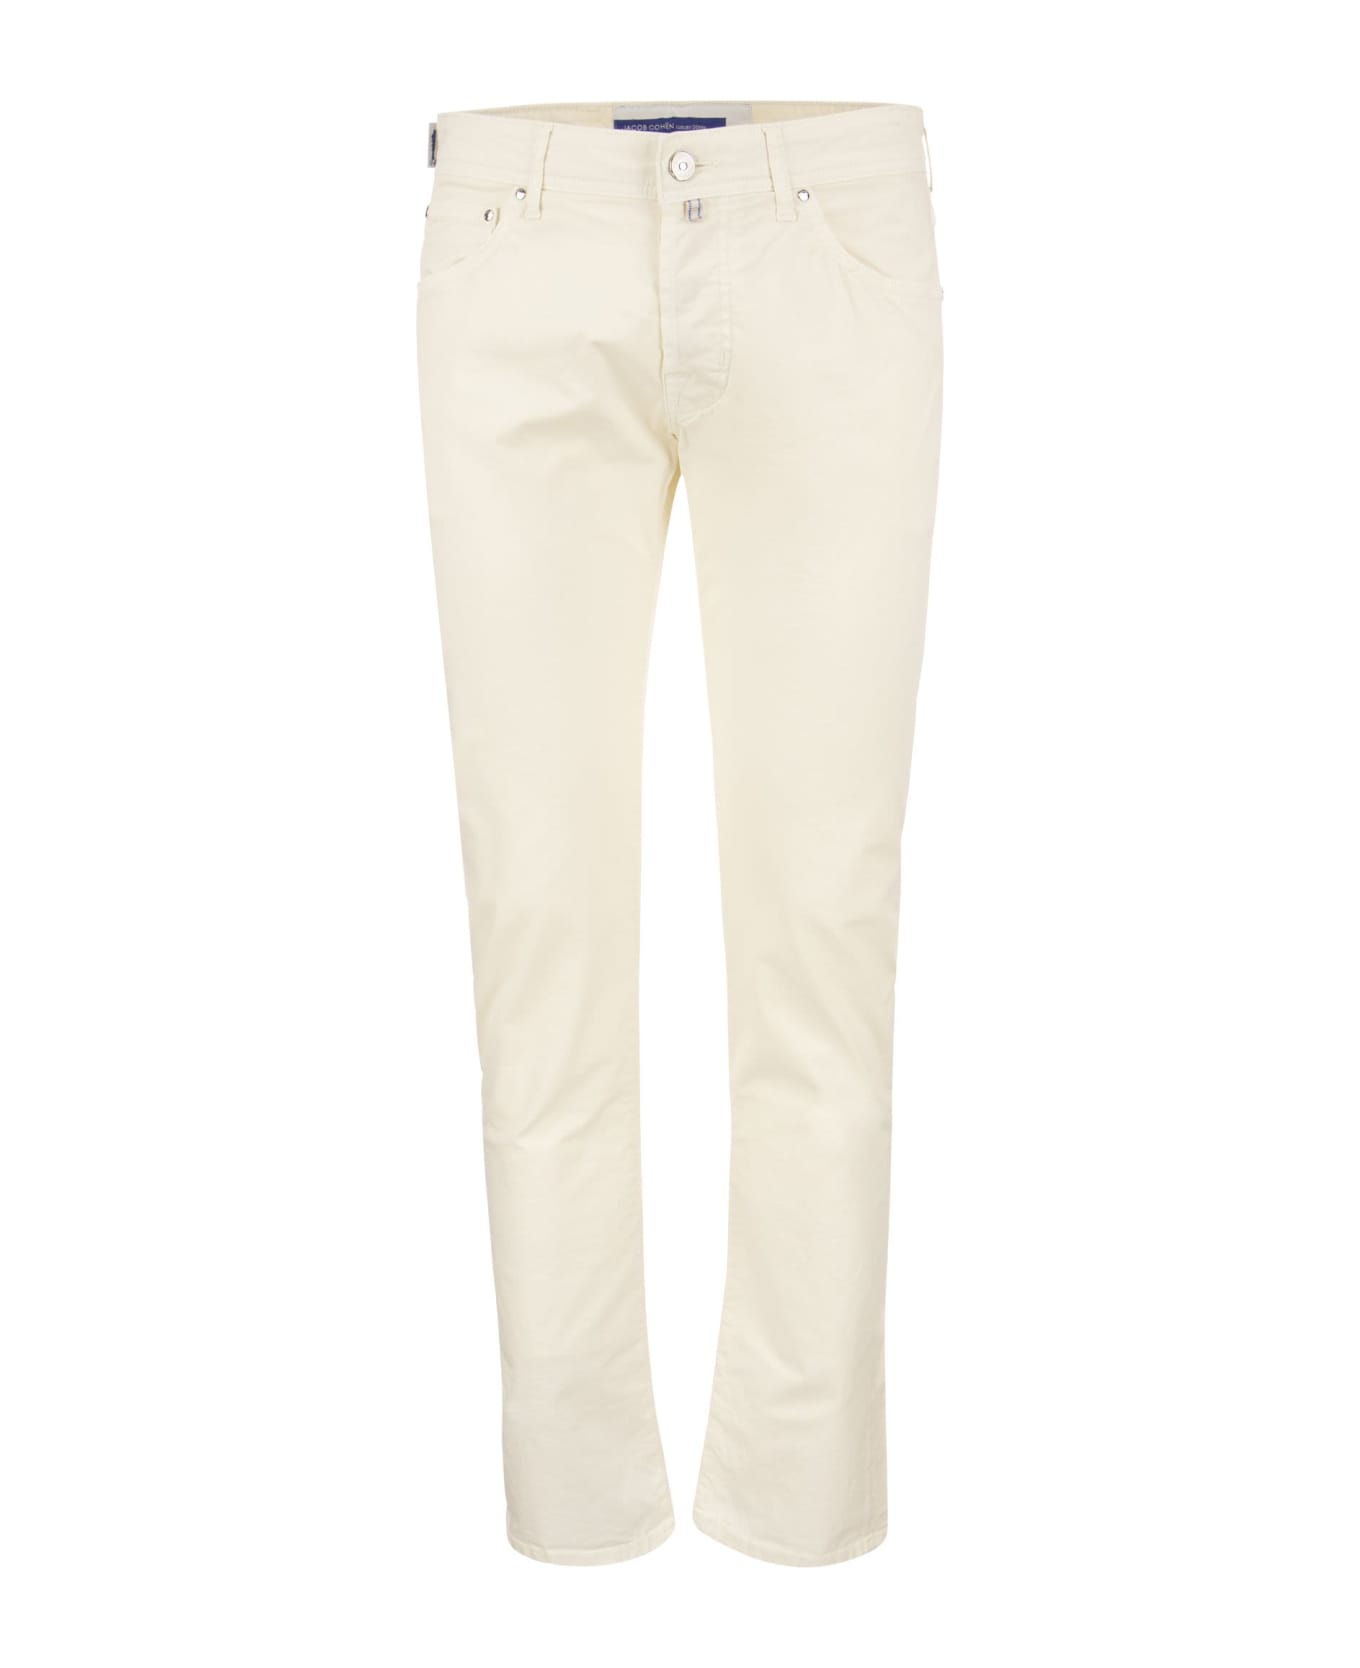 Jacob Cohen Five-pocket Jeans Trousers - Cream